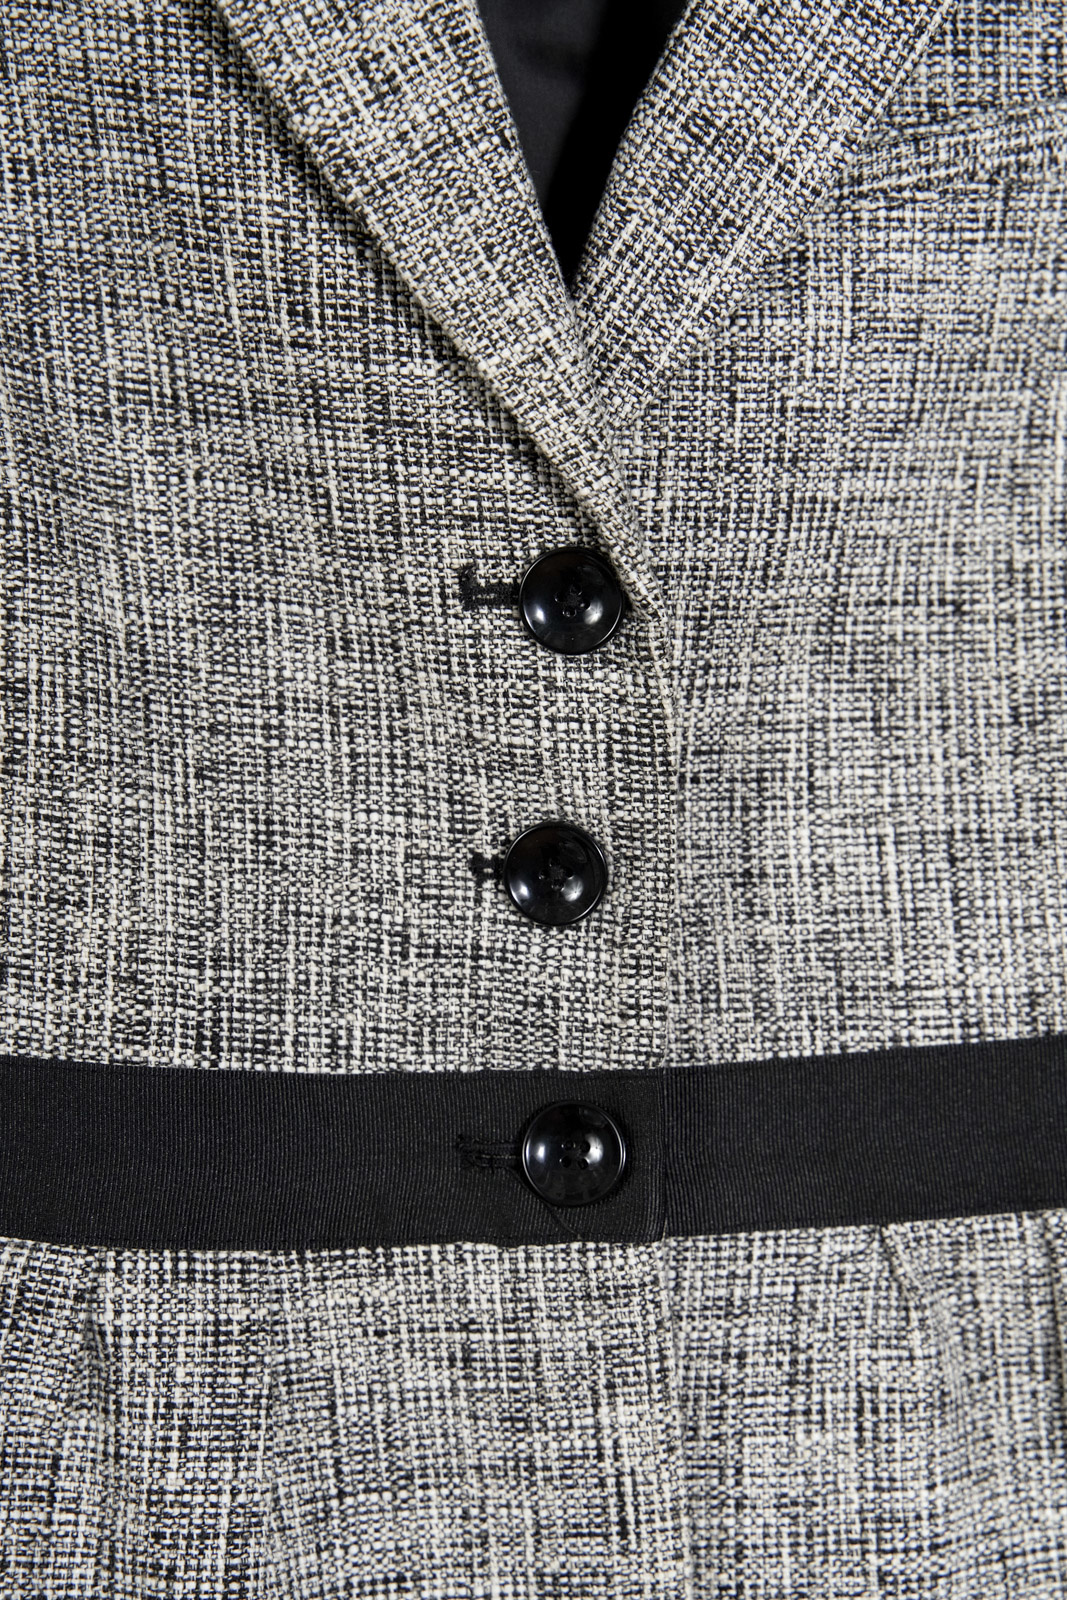 B&W Tweed Blazer with Black Waistband